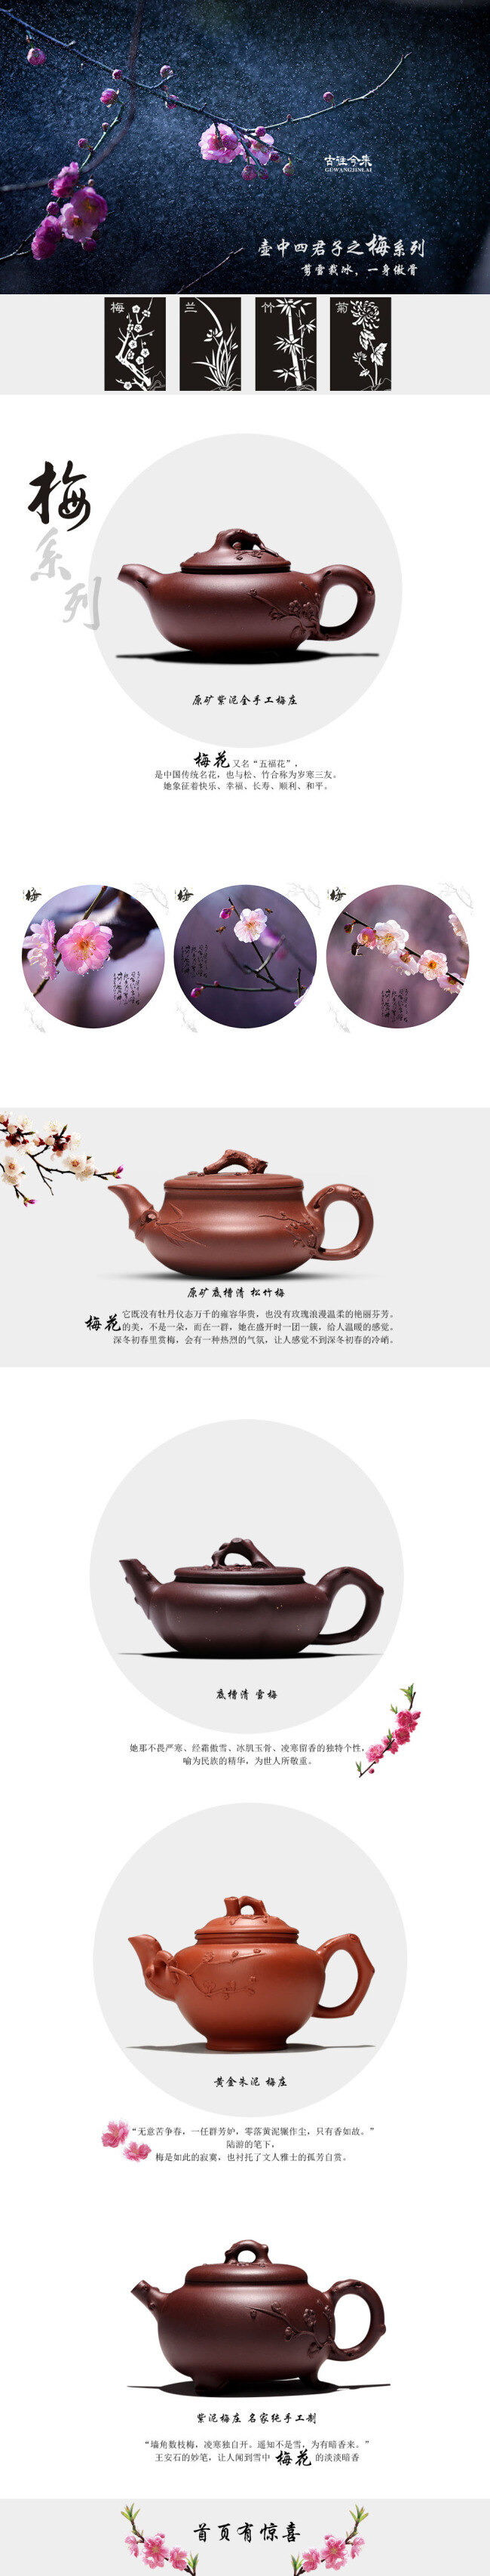 淘宝 紫砂 茶具 促销 海报 首页 大图 活动 psd海报 促销打折海报 白色